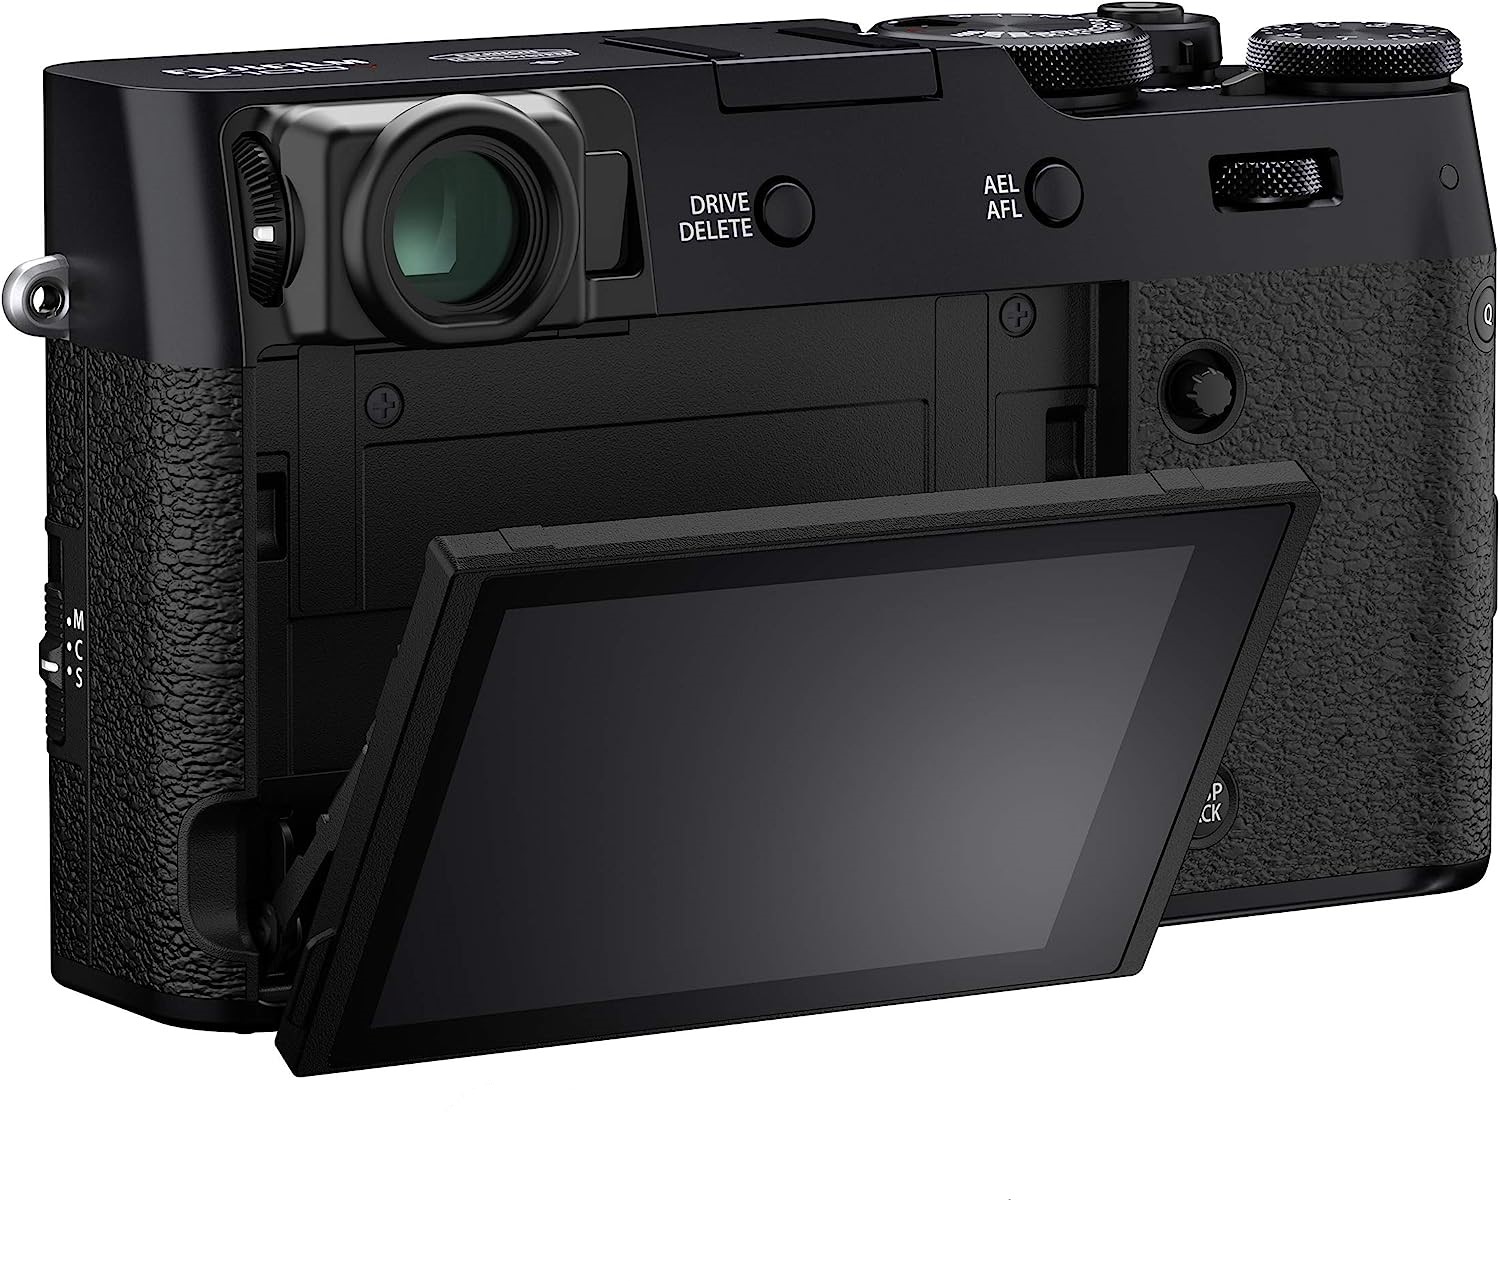  Fujifilm X100V Digital Camera (Black) Bundle with